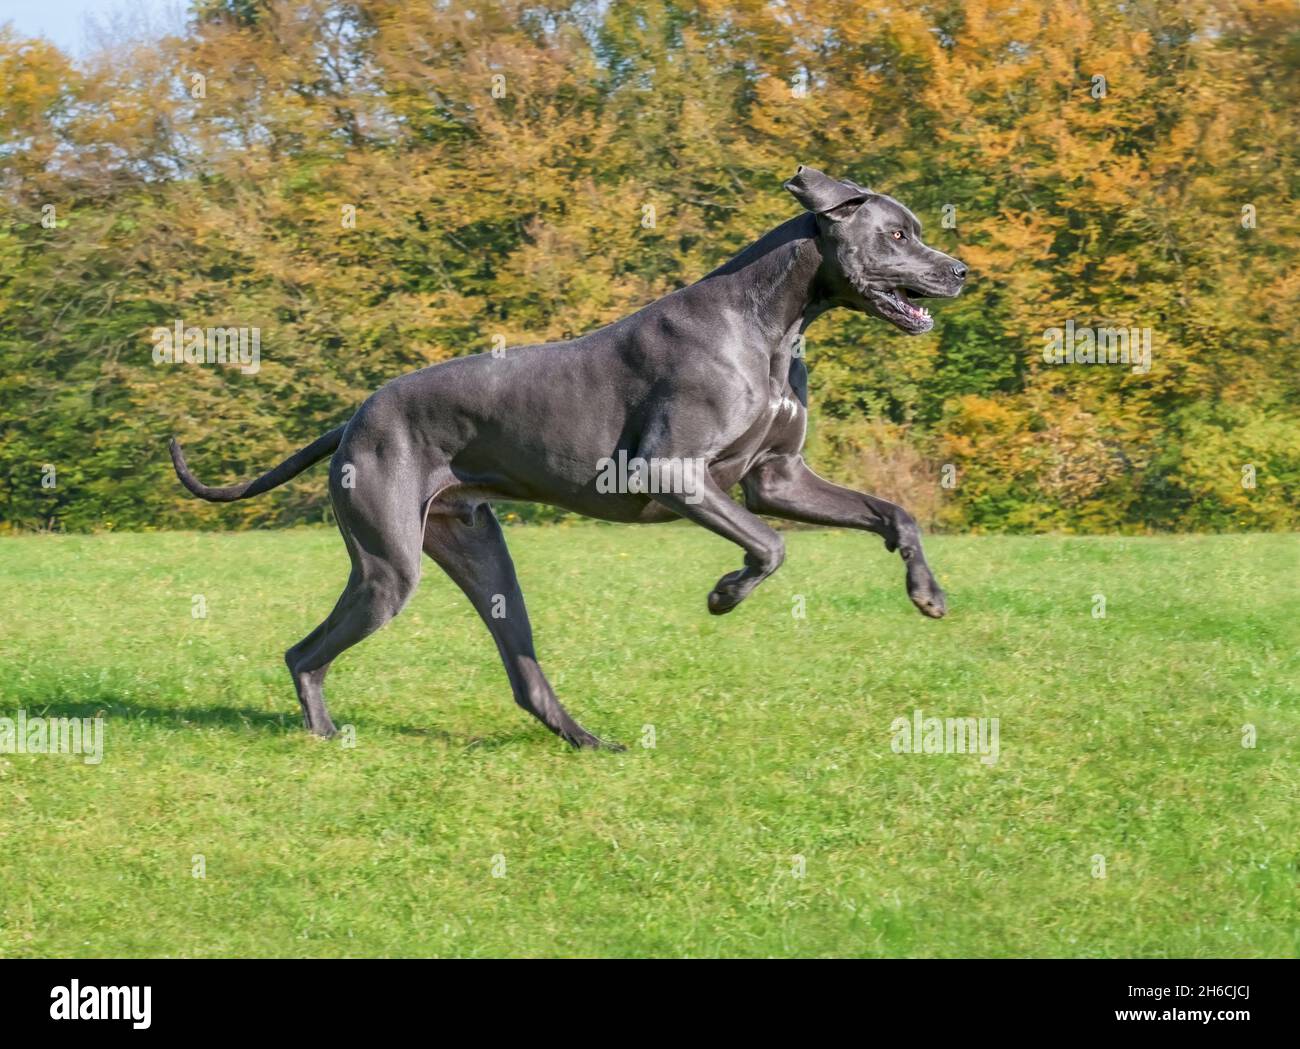 Blue Great Dane, una delle razze di cani più grandi, maschile, che corre giocosamente e potente attraverso un prato verde erba con alberi colorati in autunno Foto Stock